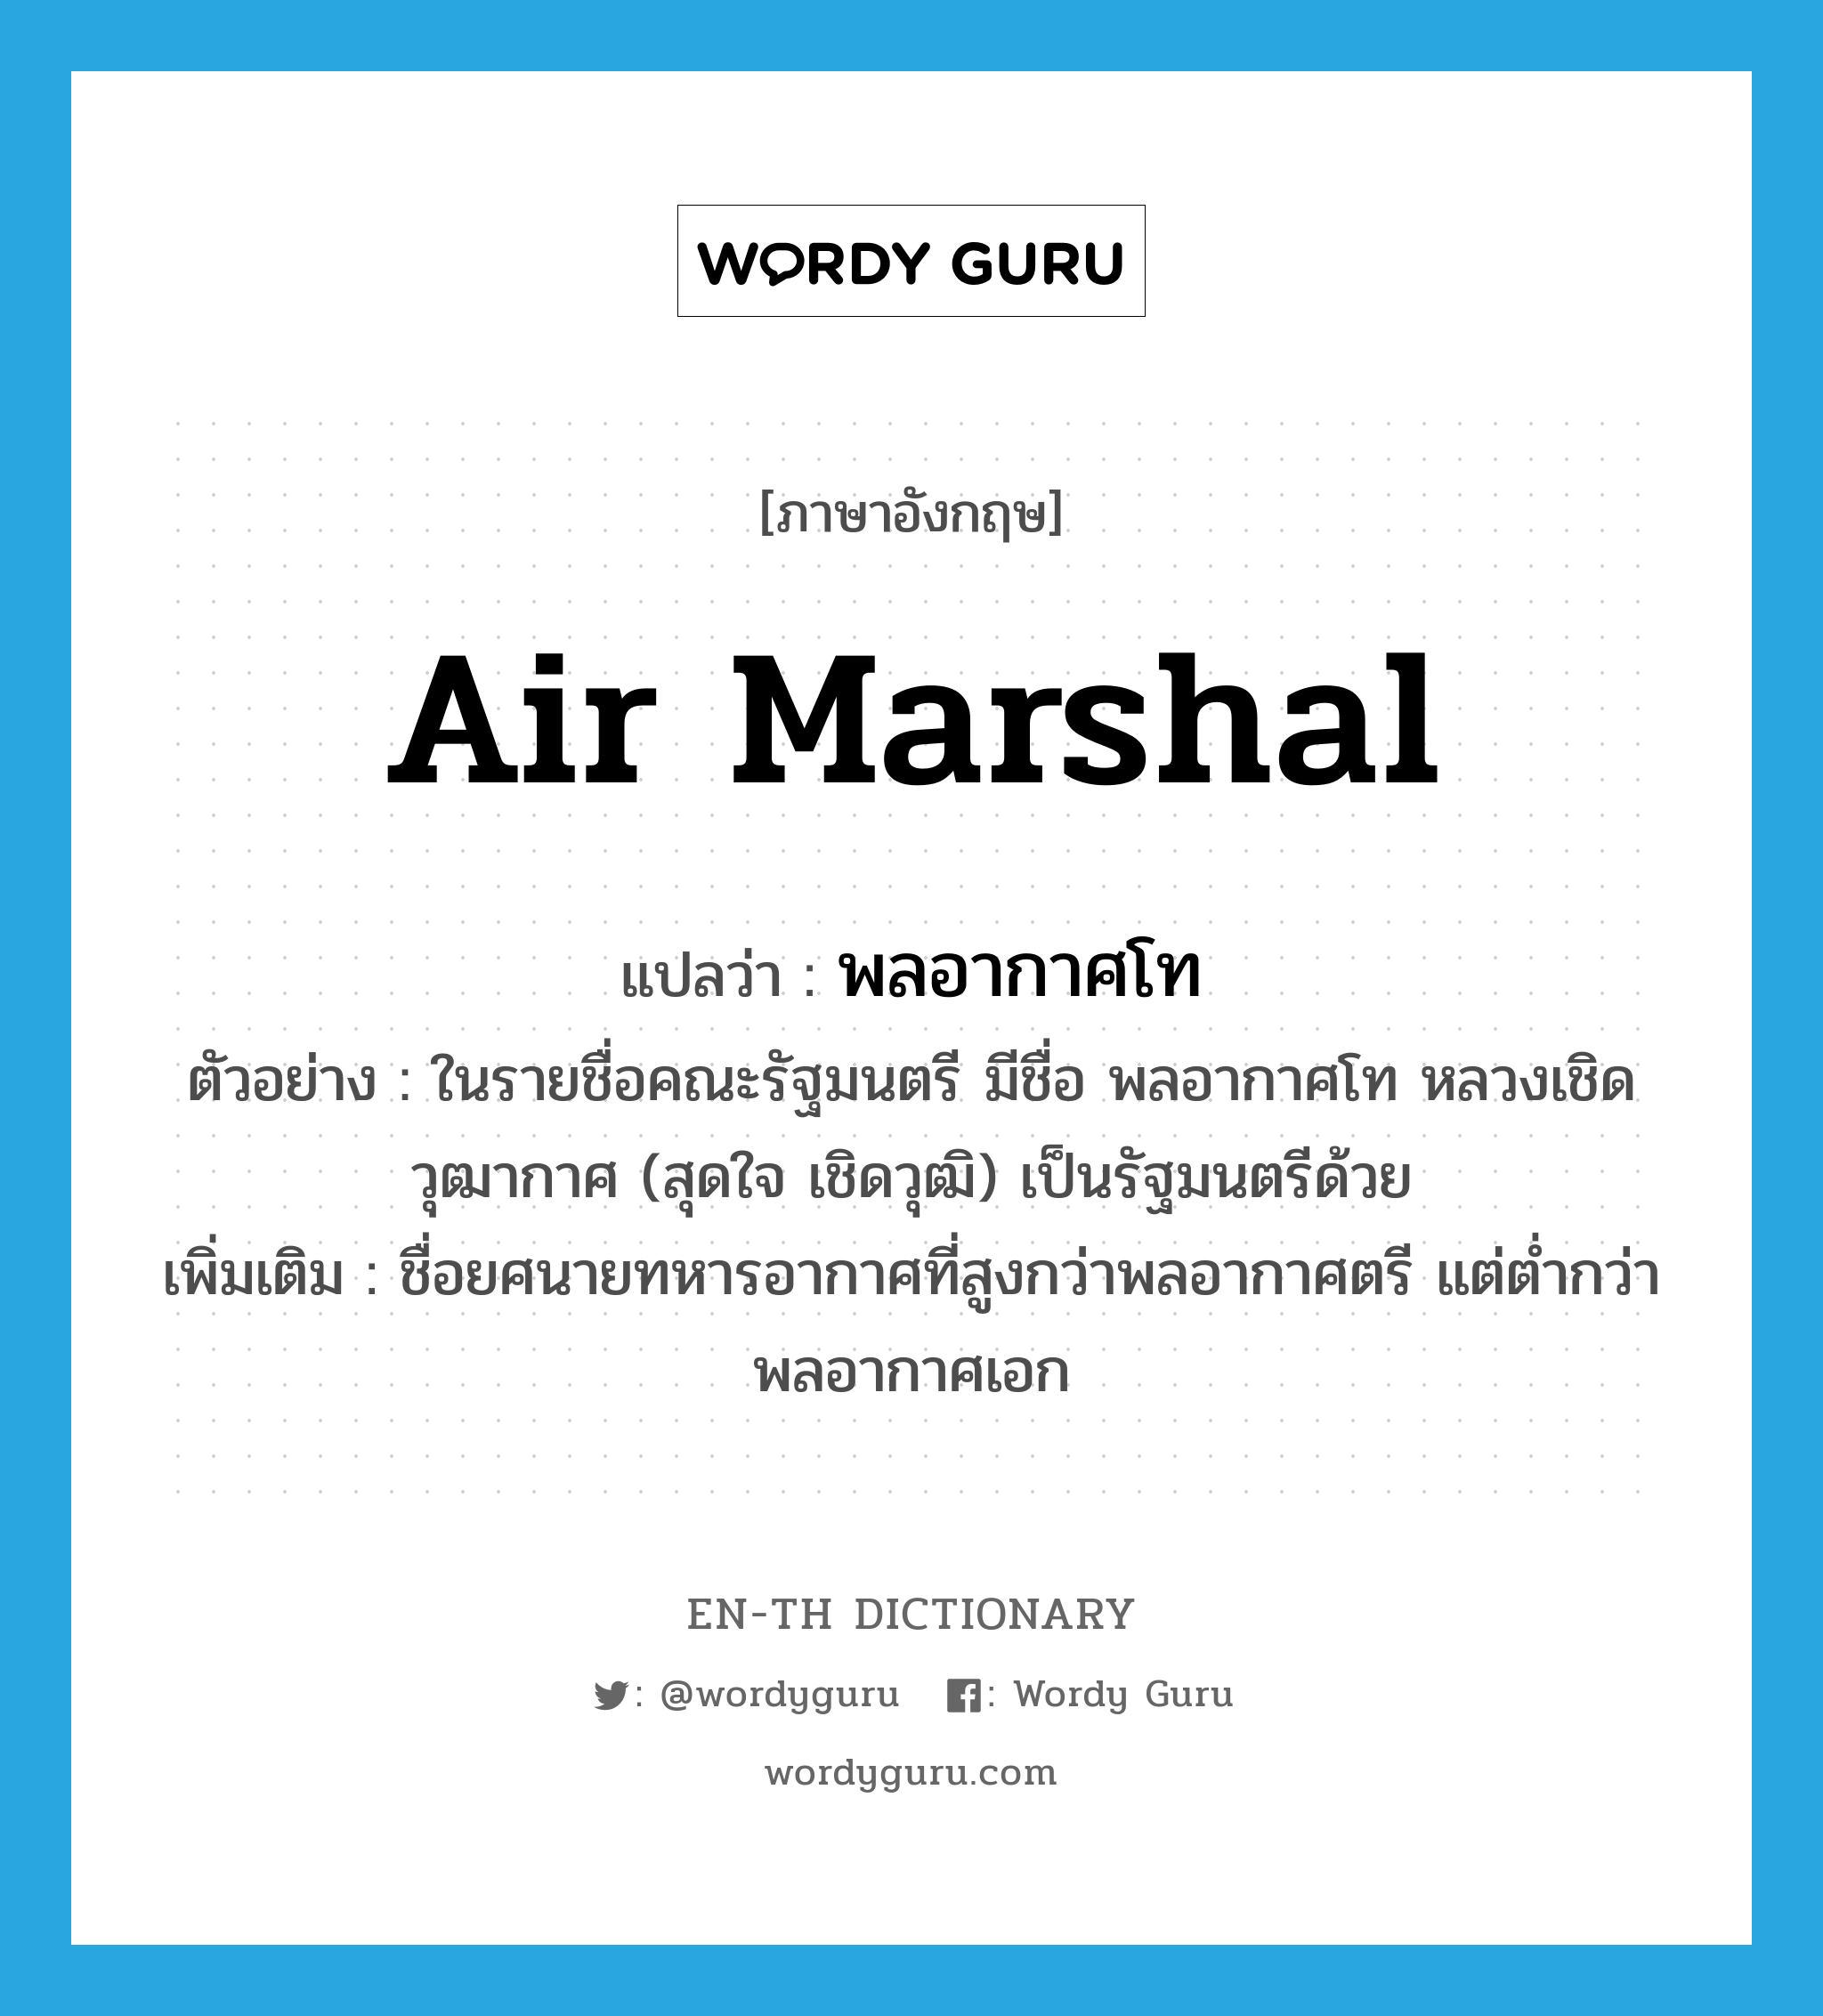 Air Marshal แปลว่า?, คำศัพท์ภาษาอังกฤษ Air Marshal แปลว่า พลอากาศโท ประเภท N ตัวอย่าง ในรายชื่อคณะรัฐมนตรี มีชื่อ พลอากาศโท หลวงเชิดวุฒากาศ (สุดใจ เชิดวุฒิ) เป็นรัฐมนตรีด้วย เพิ่มเติม ชื่อยศนายทหารอากาศที่สูงกว่าพลอากาศตรี แต่ต่ำกว่าพลอากาศเอก หมวด N